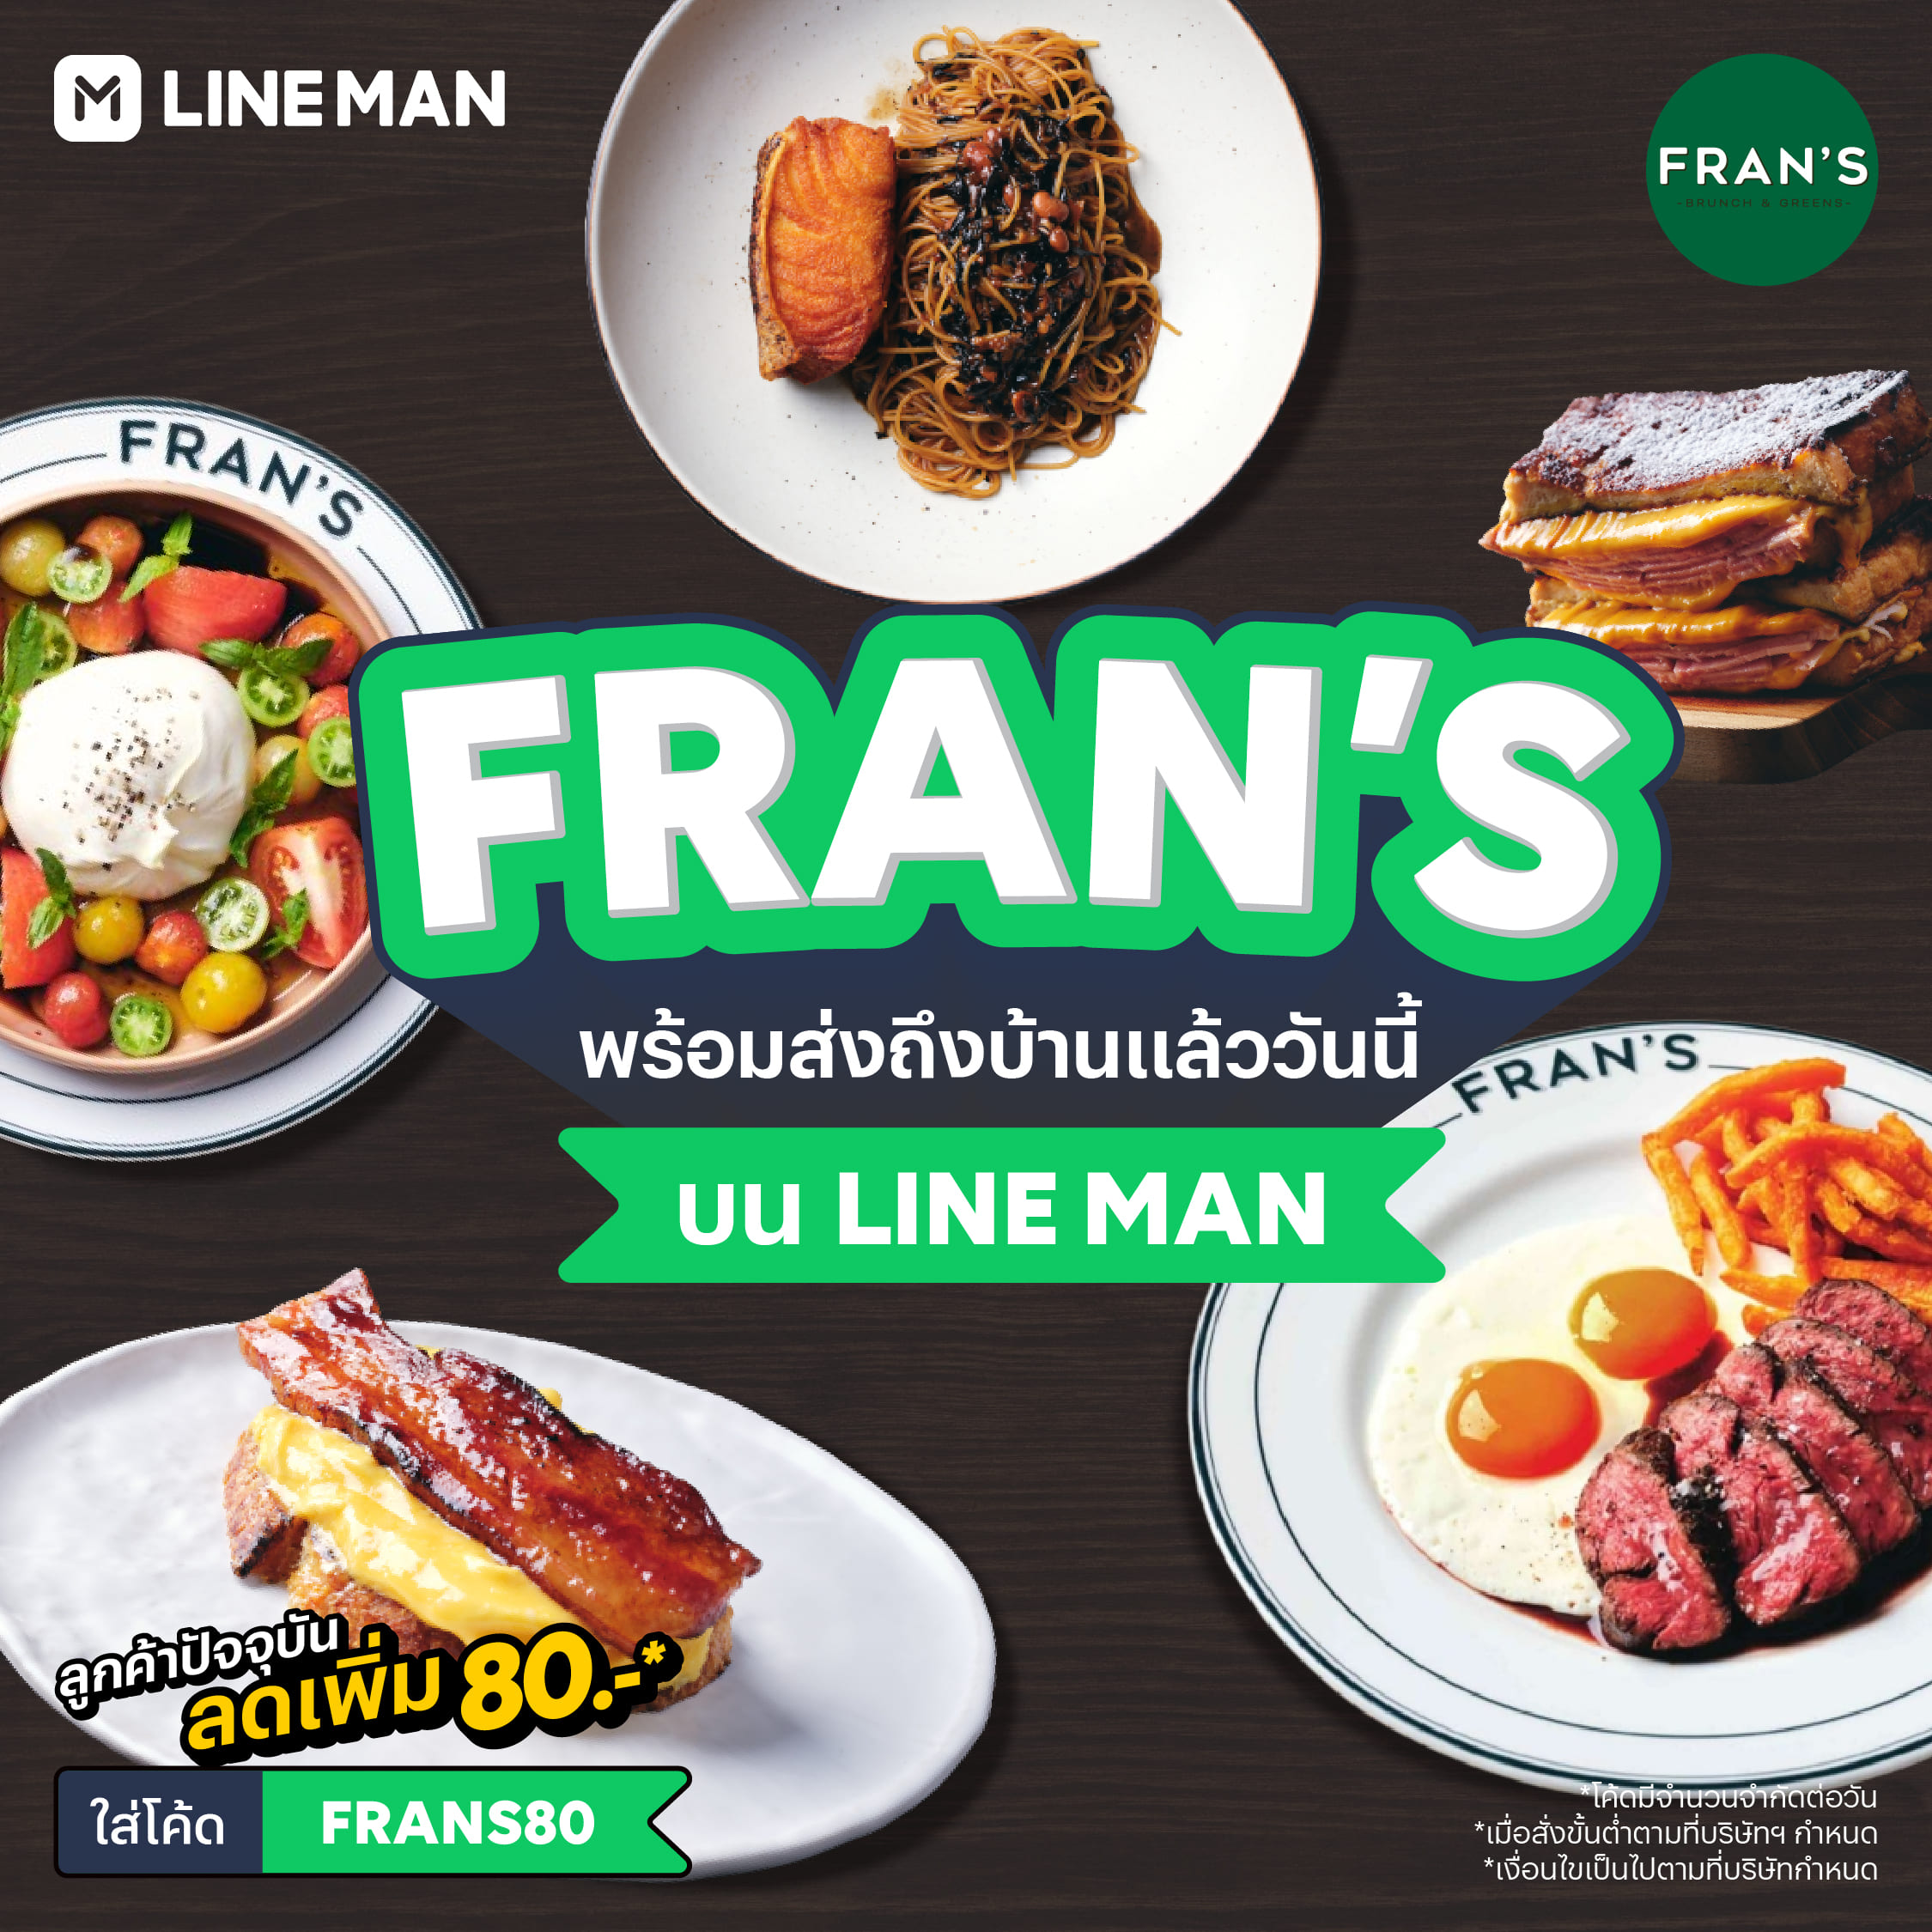 Fran’s และ Ăn Cơm Ăn Cá เปิดเดลิเวอรีที่แรกบน LINE MAN